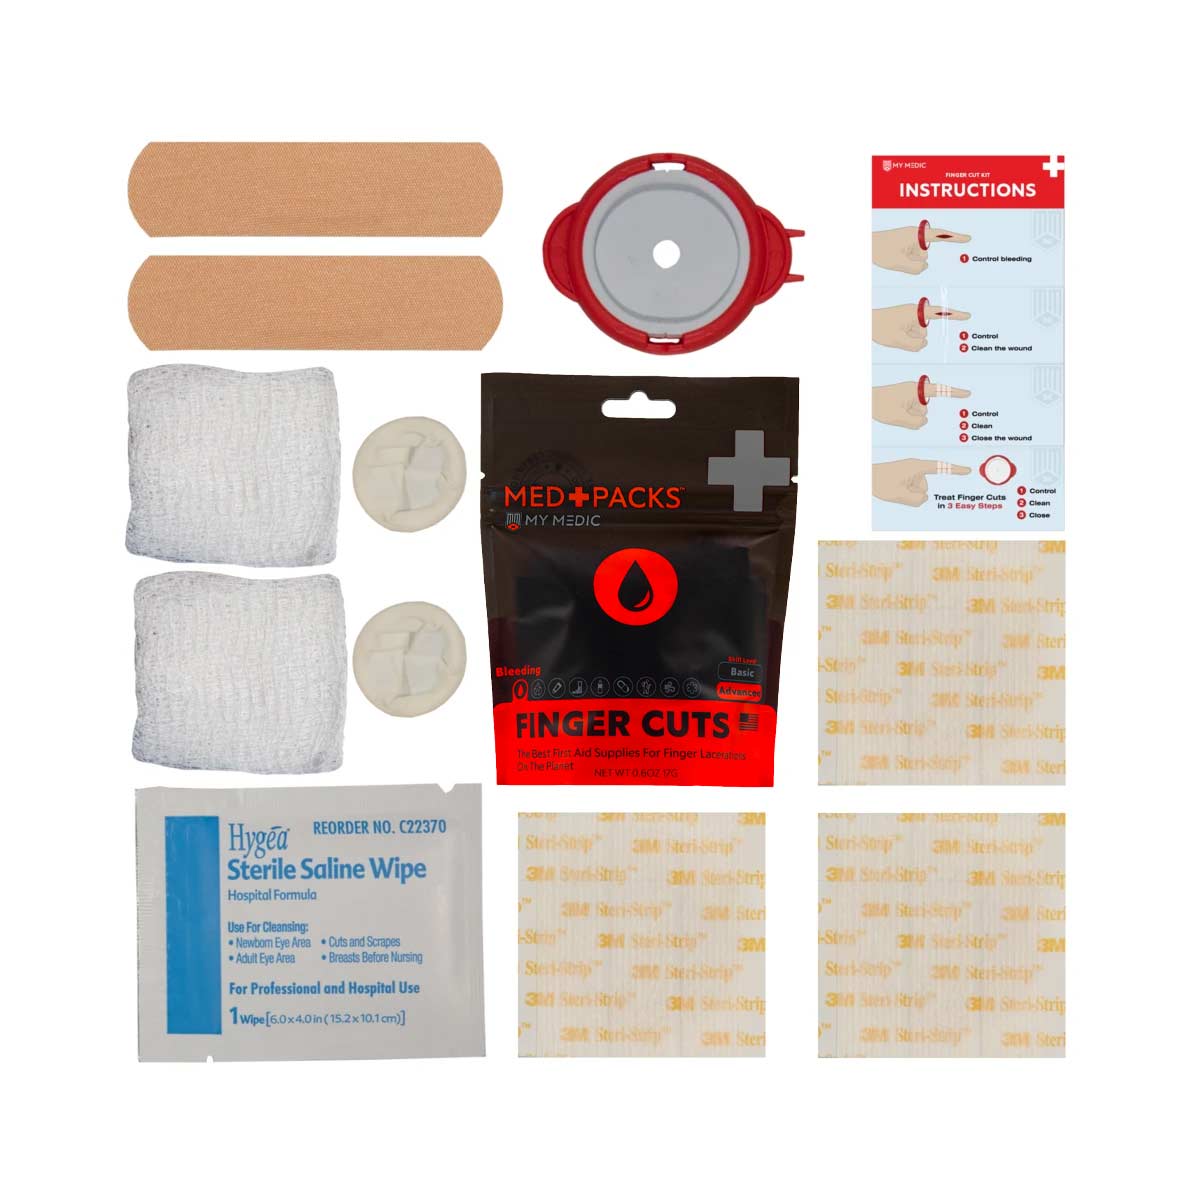 My Medic | MedPacks™ | Finger Cut Kit